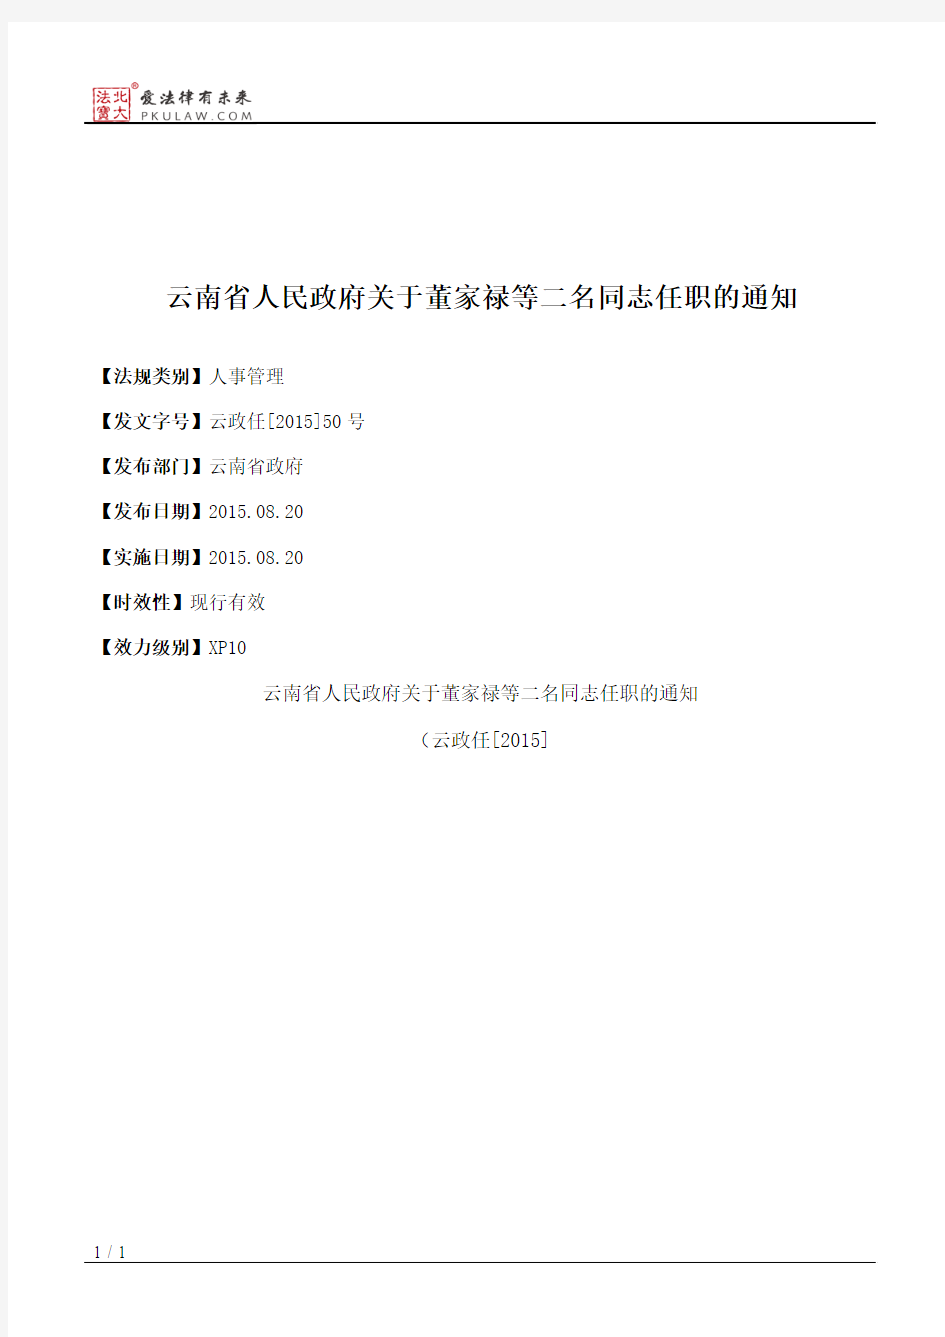 云南省人民政府关于董家禄等二名同志任职的通知